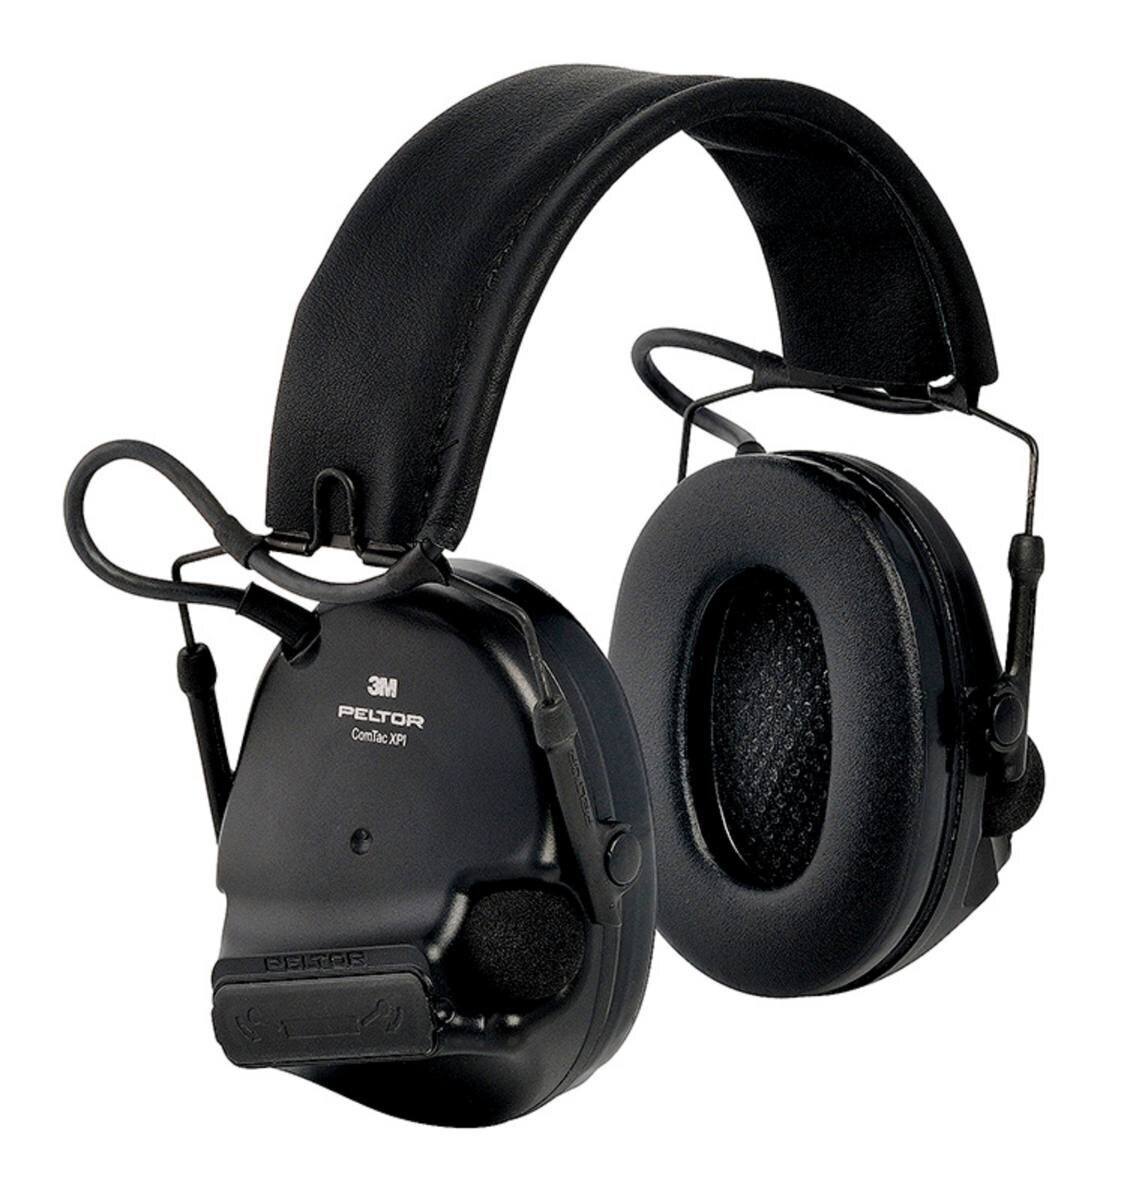 3M PELTOR ComTac XPI casque d'écoute tactique CTXPI02S, pliable, sur la tête, noir, MT20H682FB-02 SV